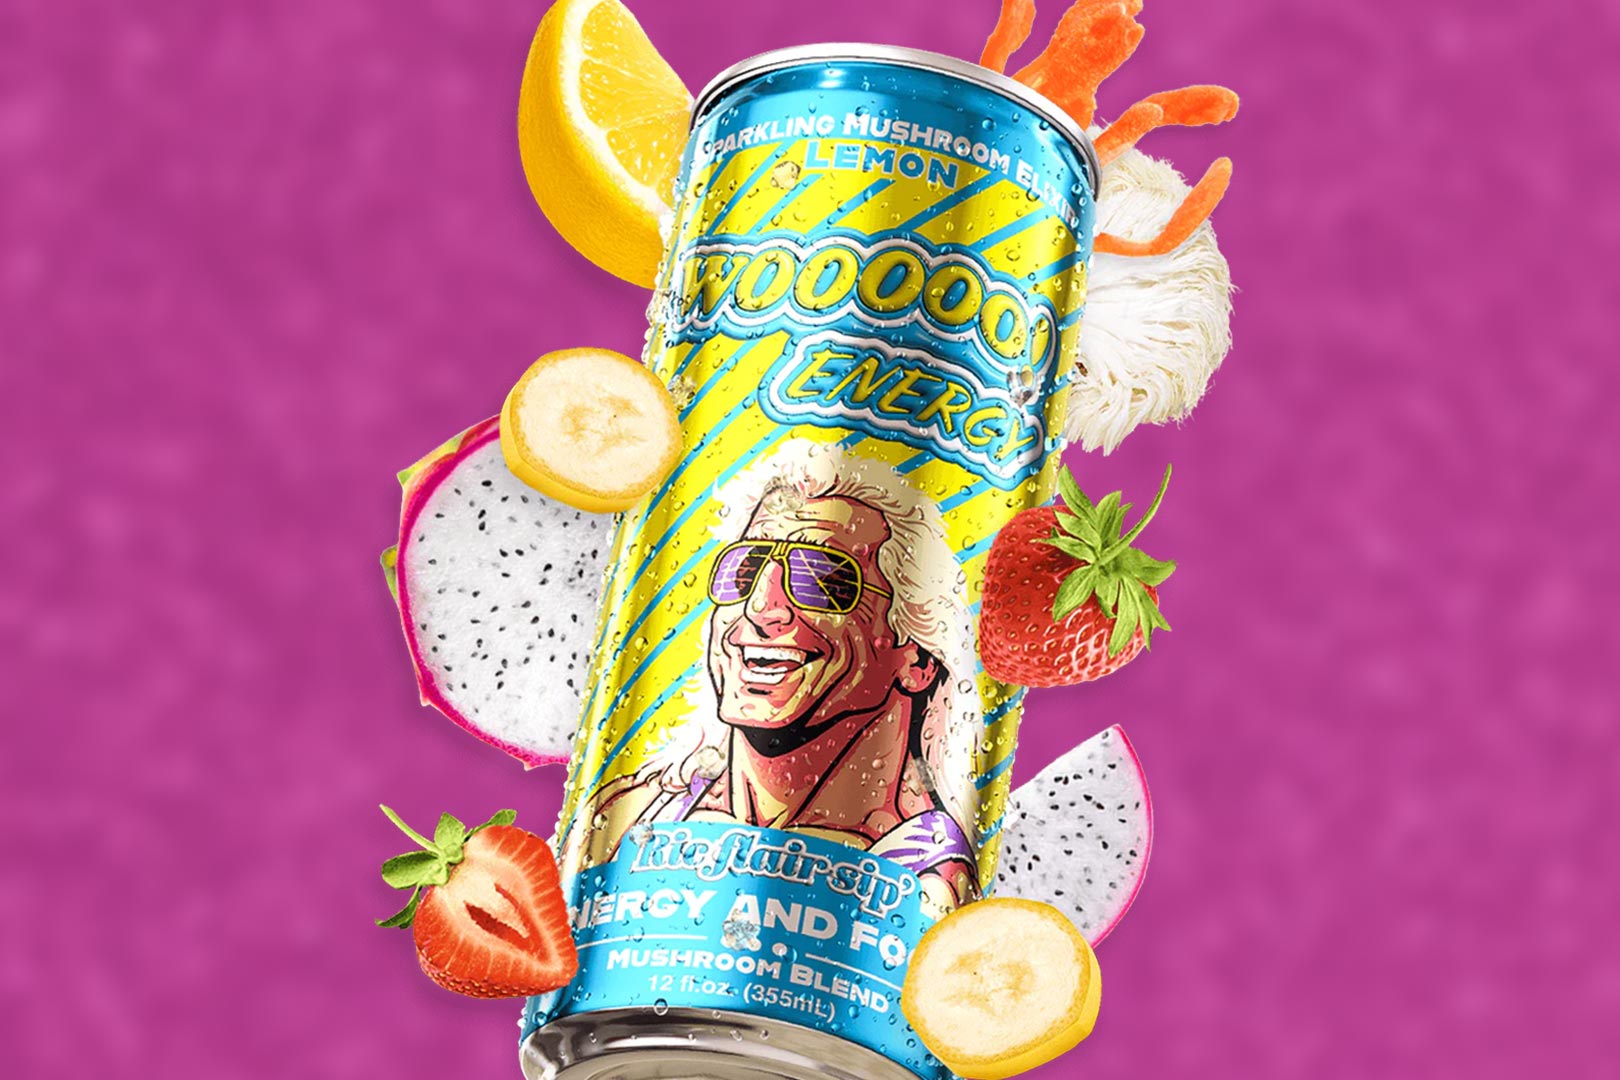 Ric Flair Wooooo Energy Drink